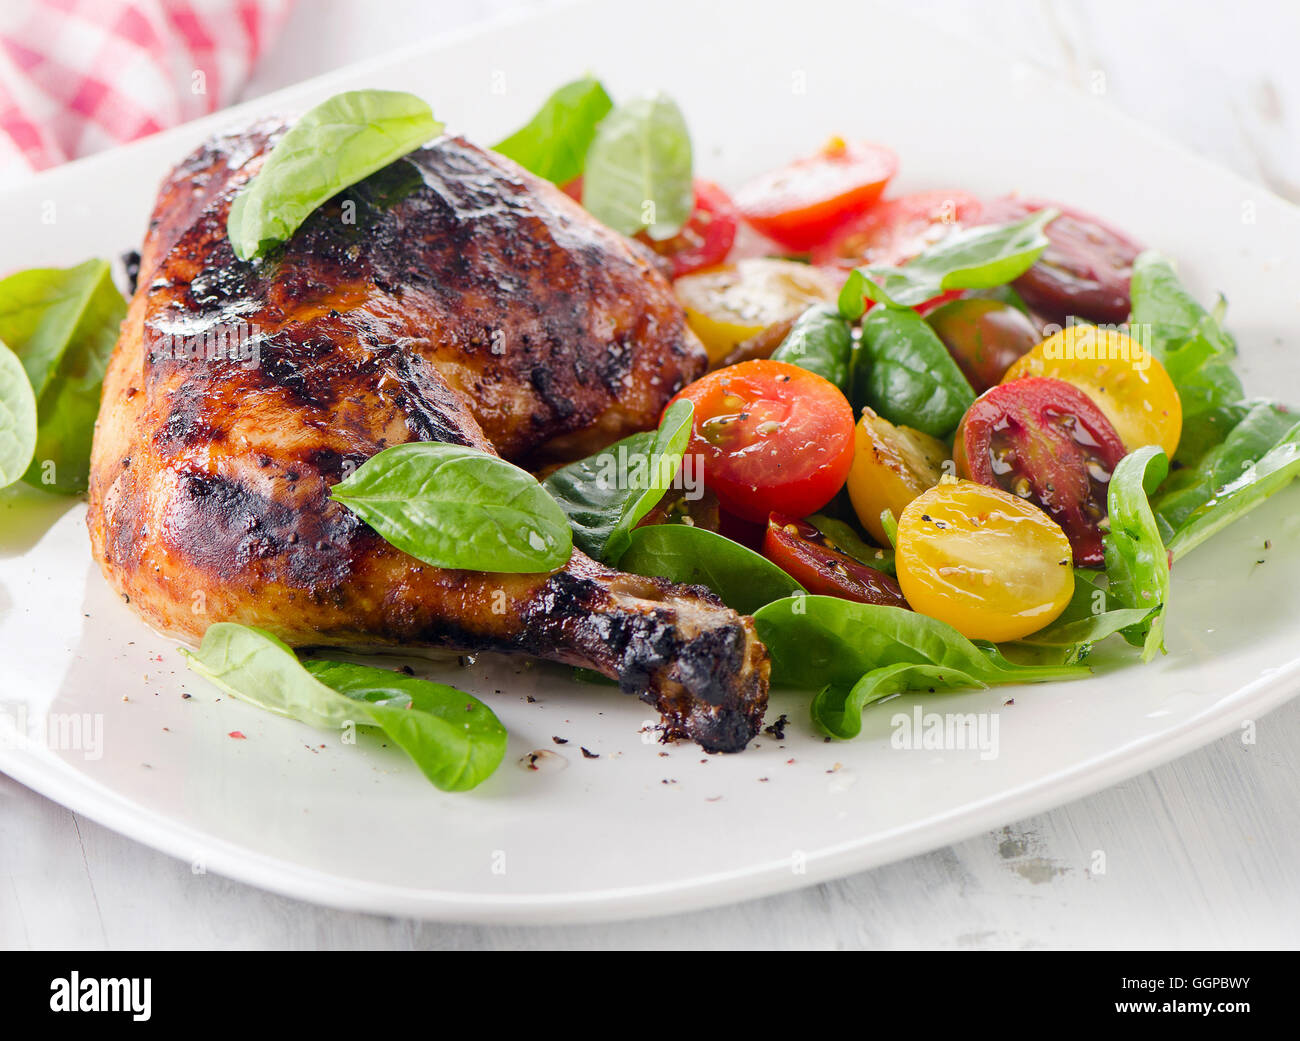 Cuisse de poulet rôti avec des légumes frais. Selective focus Banque D'Images